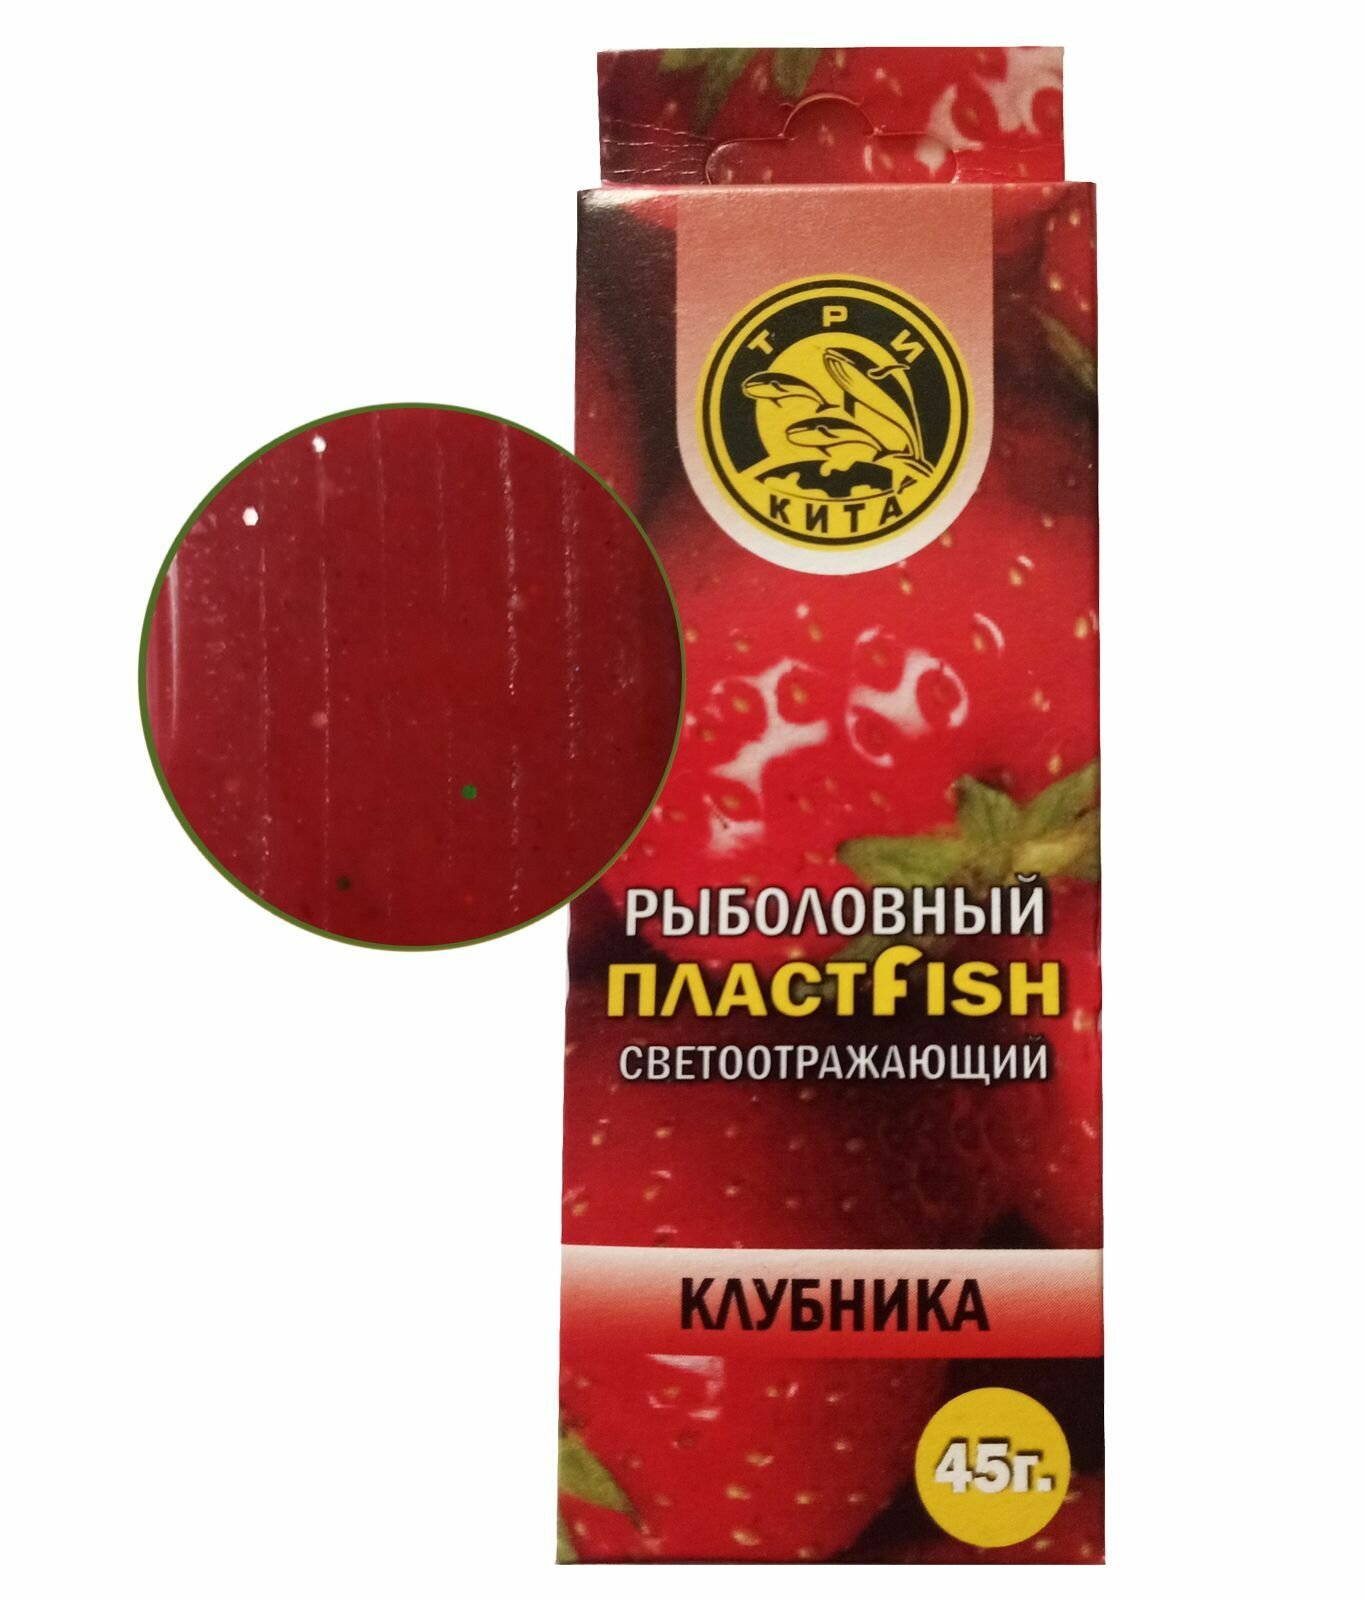 Пластилин рыболовный насадочный ПлаcтFish Клубника с блестками ароматный